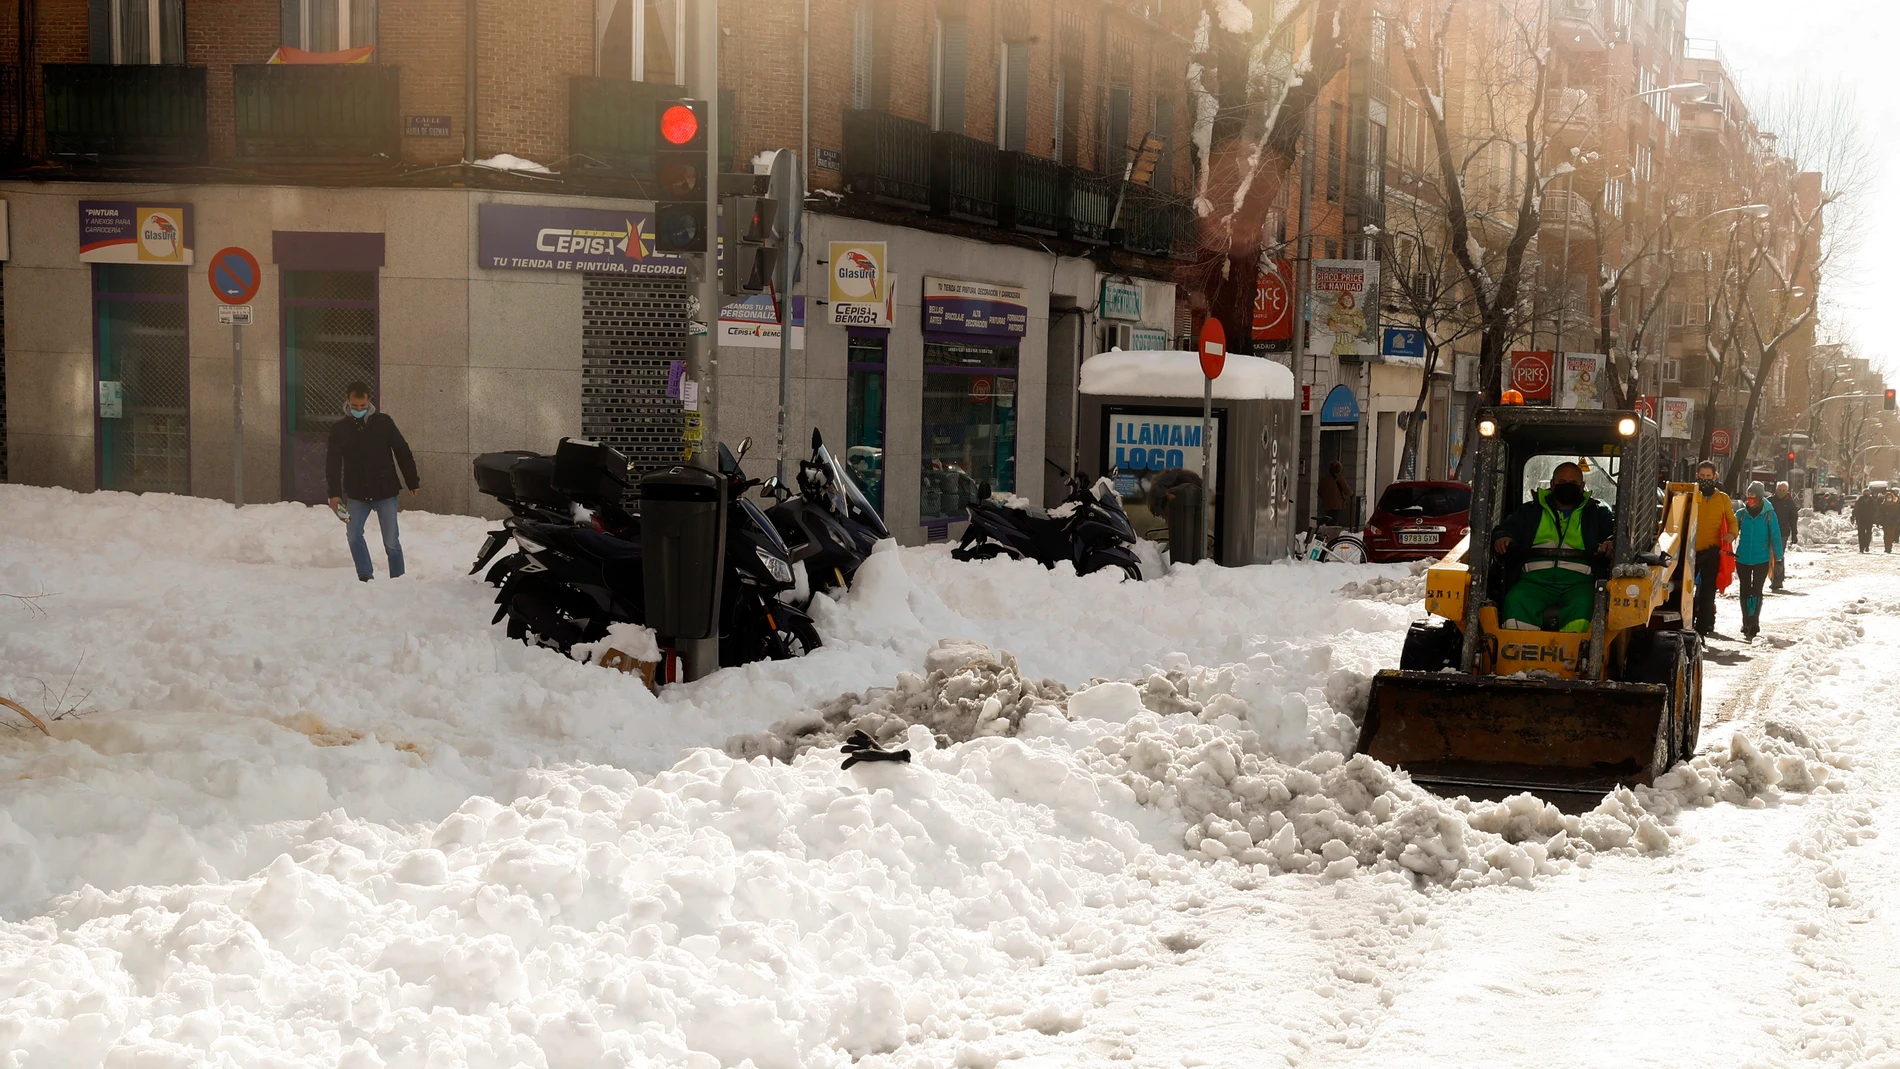 Un quitanieves despeja una calle de nieve en la zona de Cuatro Caminos en Madrid